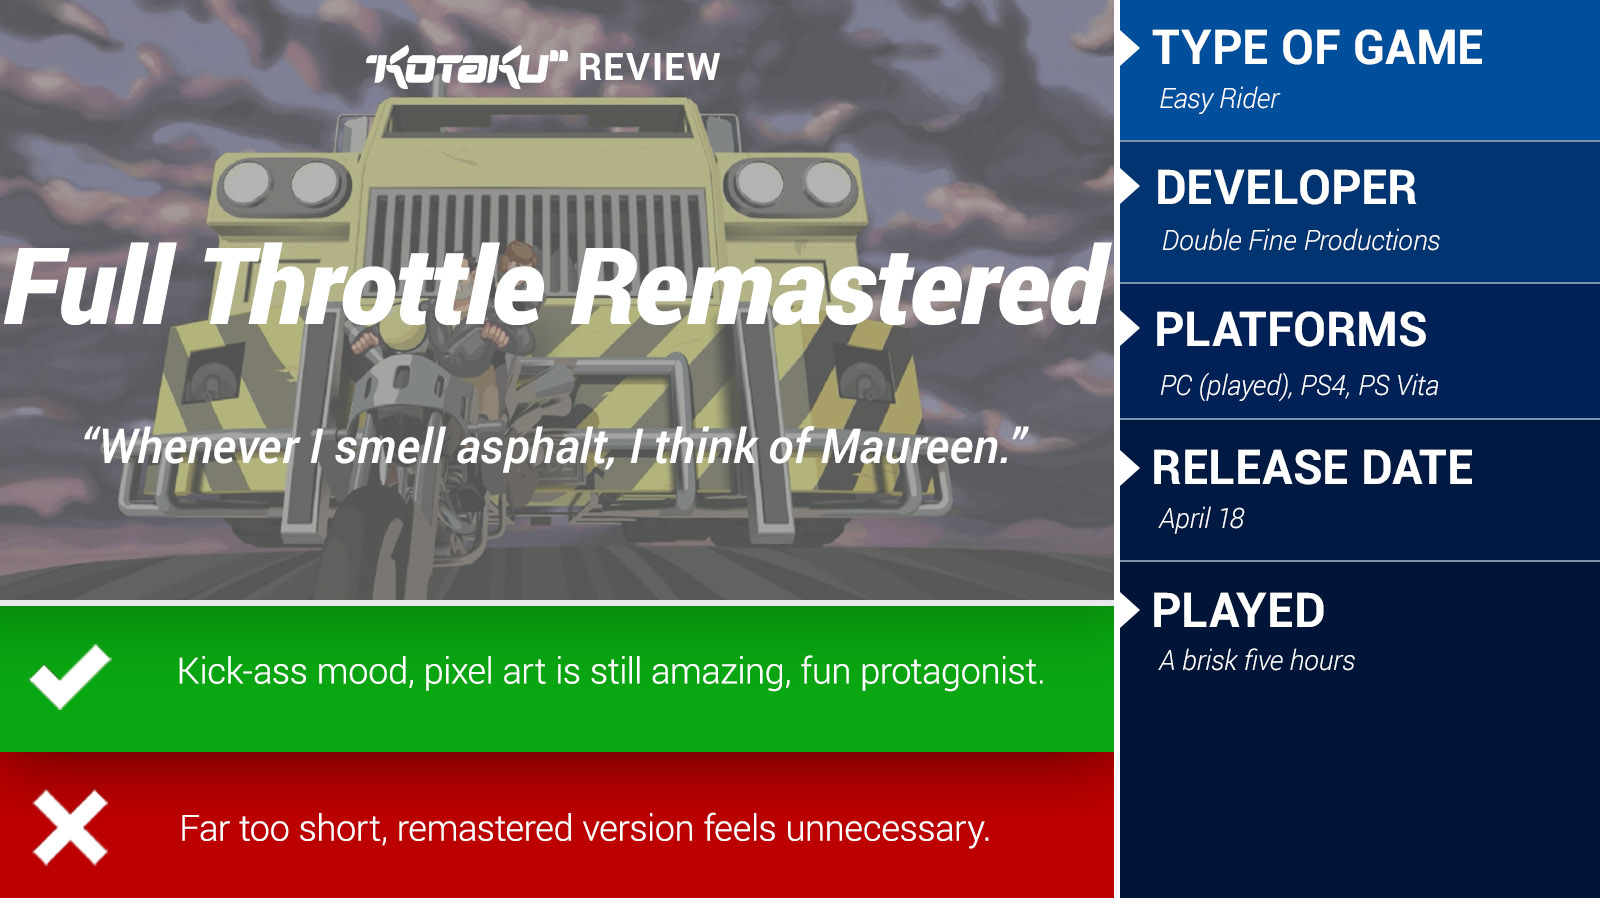 Full Throttle Remastered: The Kotaku Review